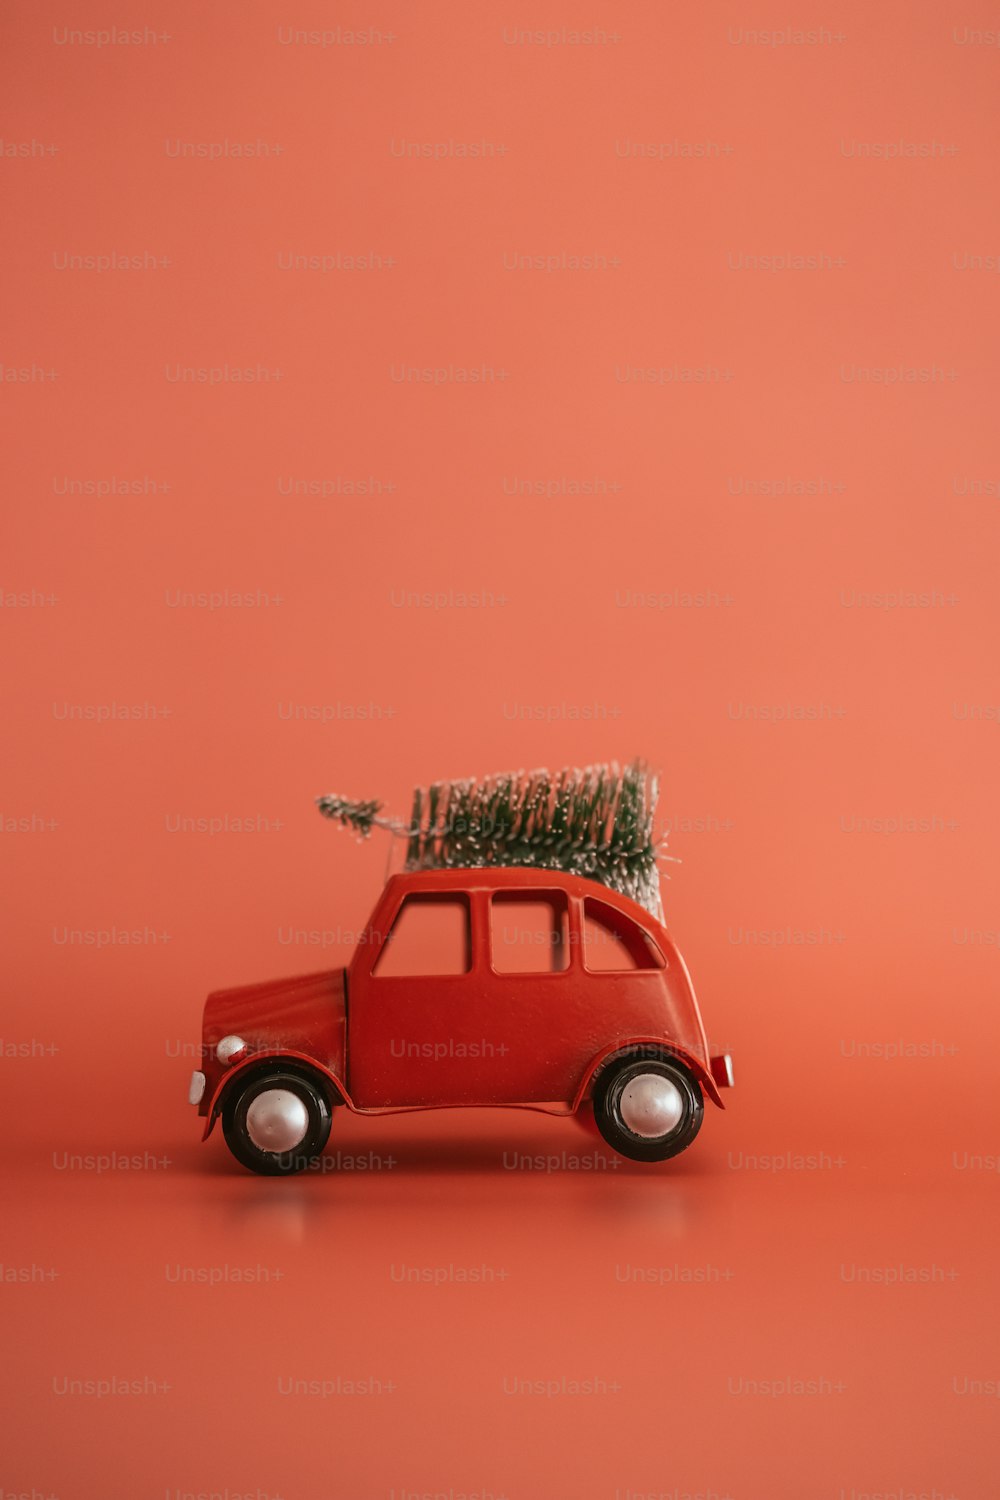 クリスマスツリーを上に乗せた小さな赤い車